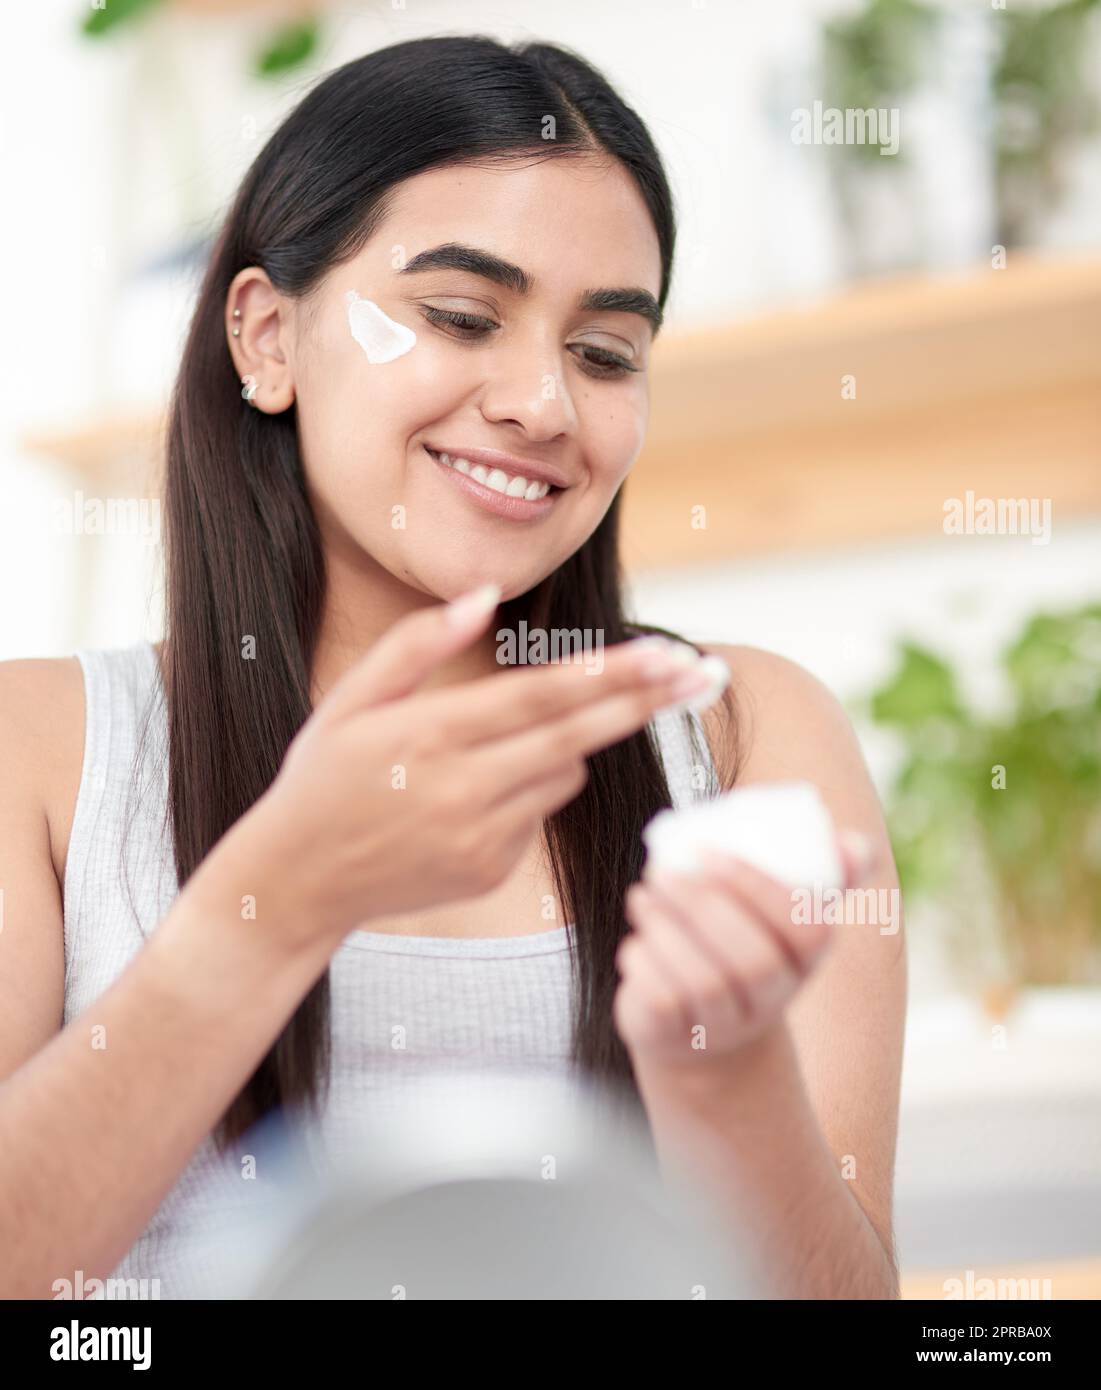 Hydratisieren Sie Ihren Weg zu einer gesunden, prallen Haut. Eine schöne junge Frau, die ihre Feuchtigkeitscreme ansieht. Stockfoto